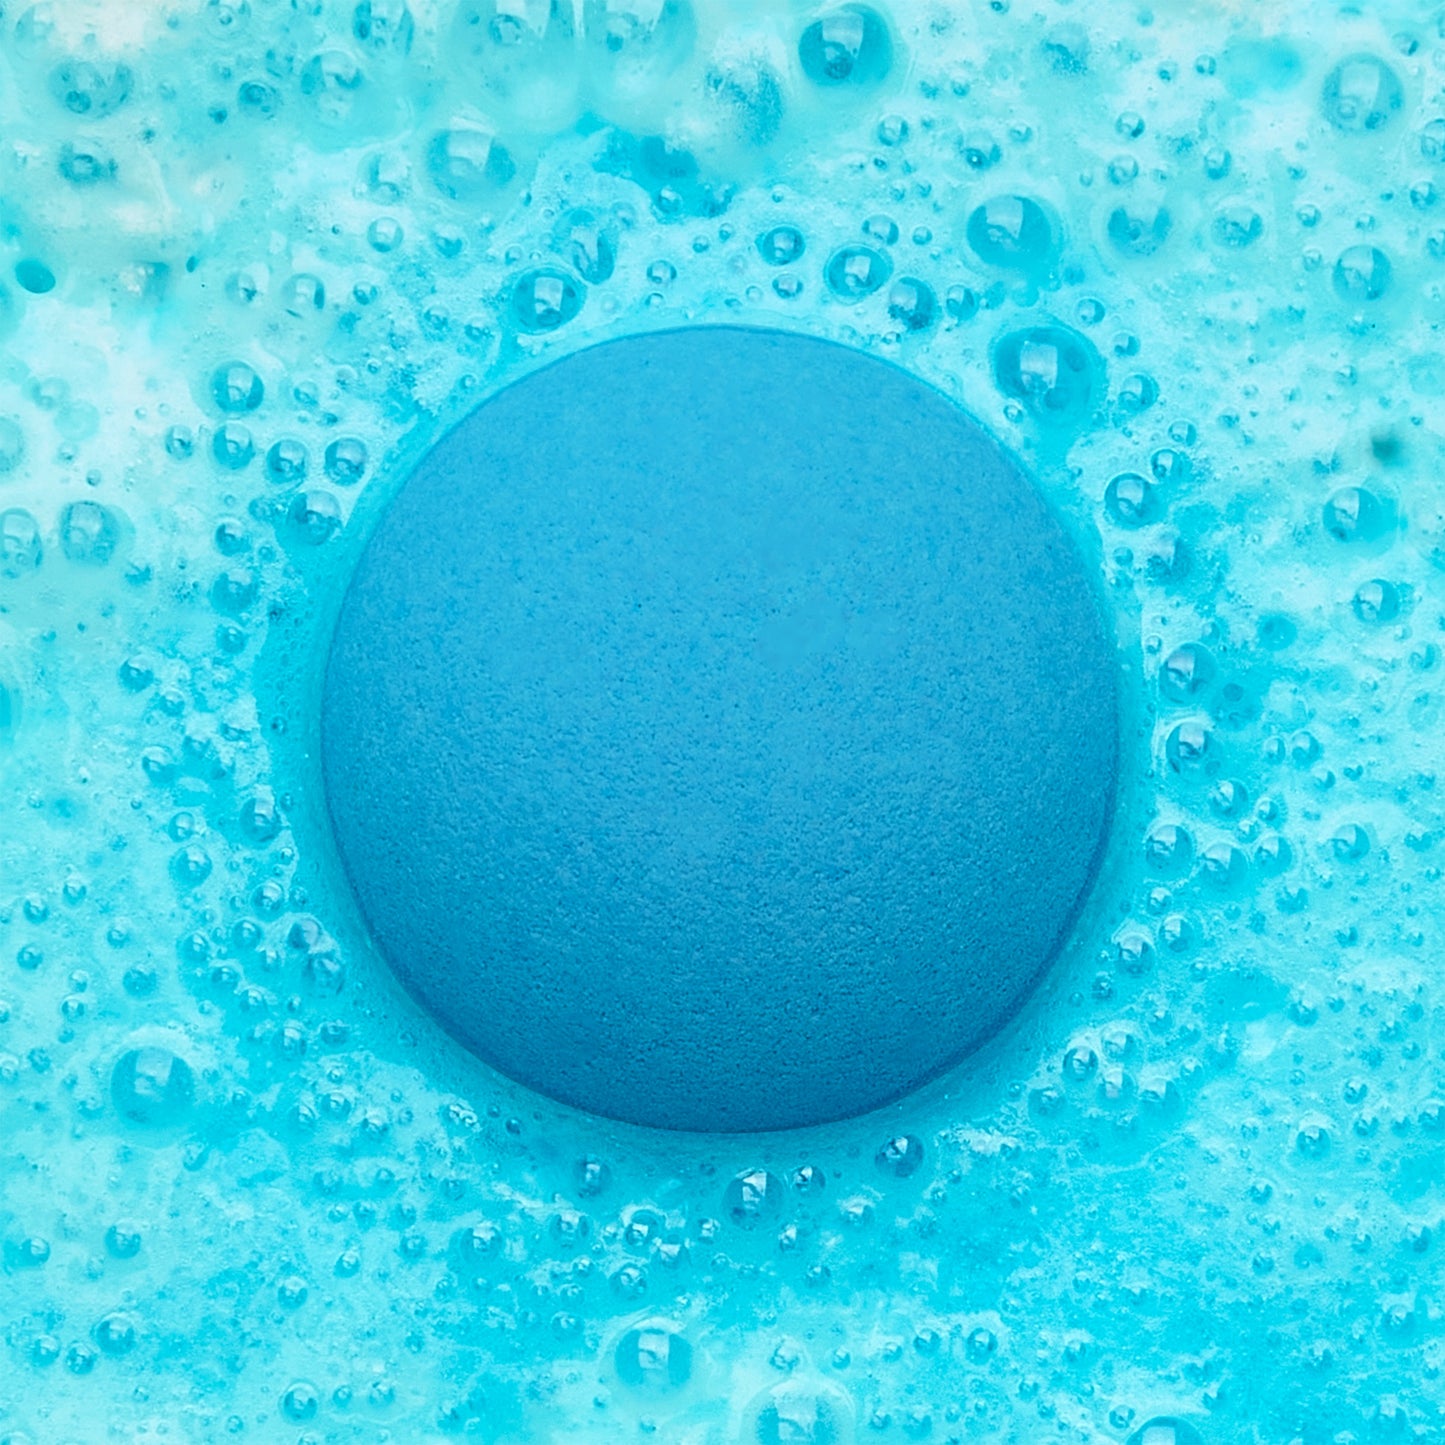 an blue fizzing bath bomb in blue water